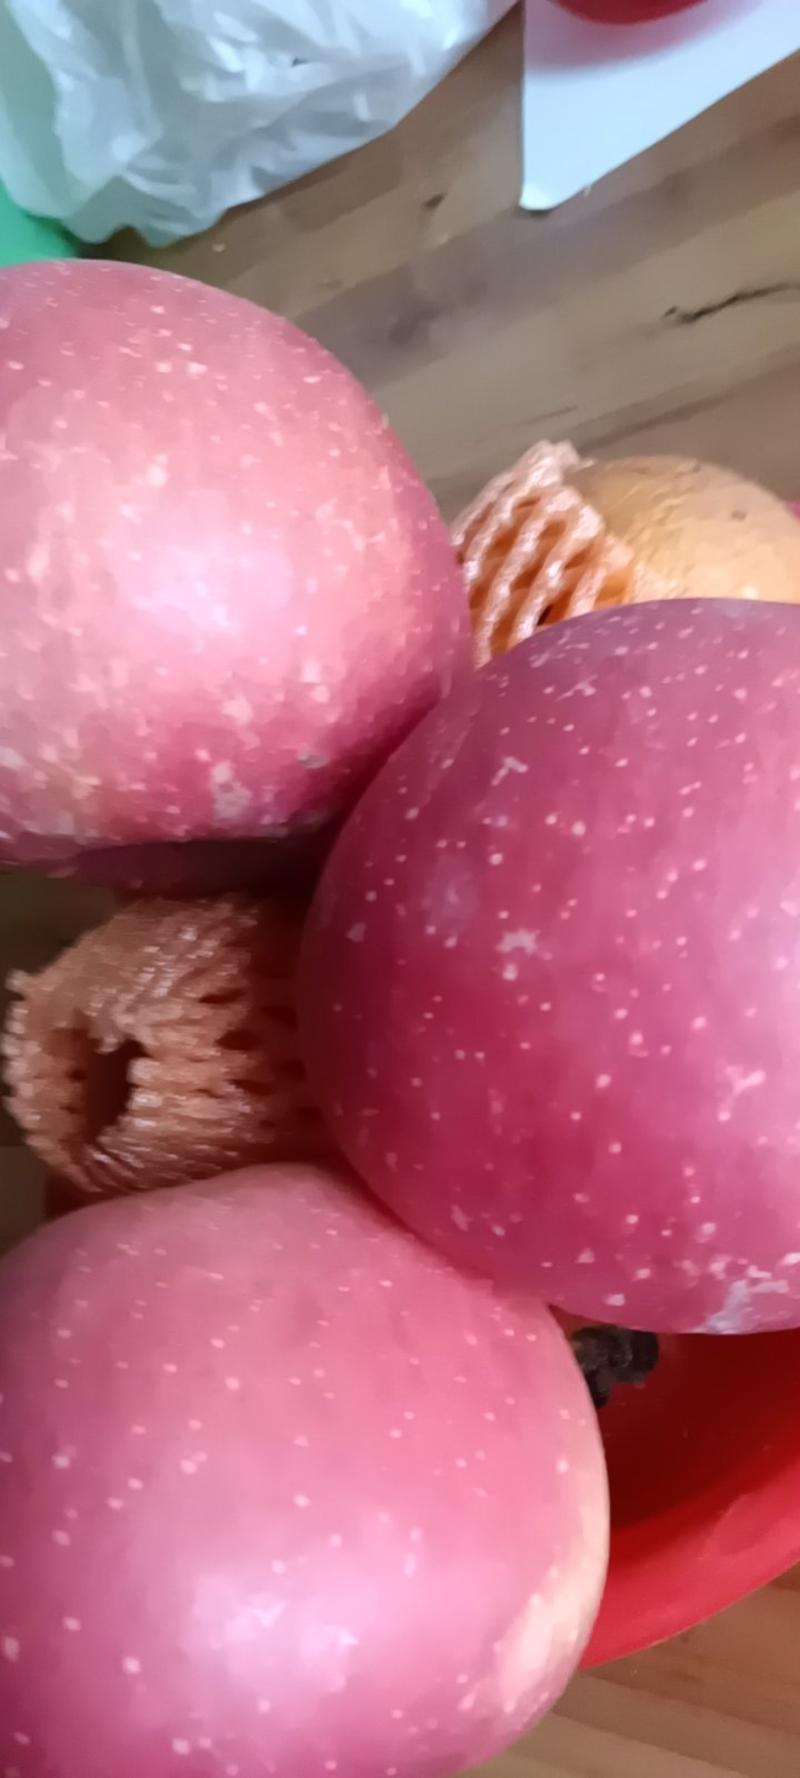 农民自种的新鲜清甜的小苹果。9.5一10斤一件包邮。